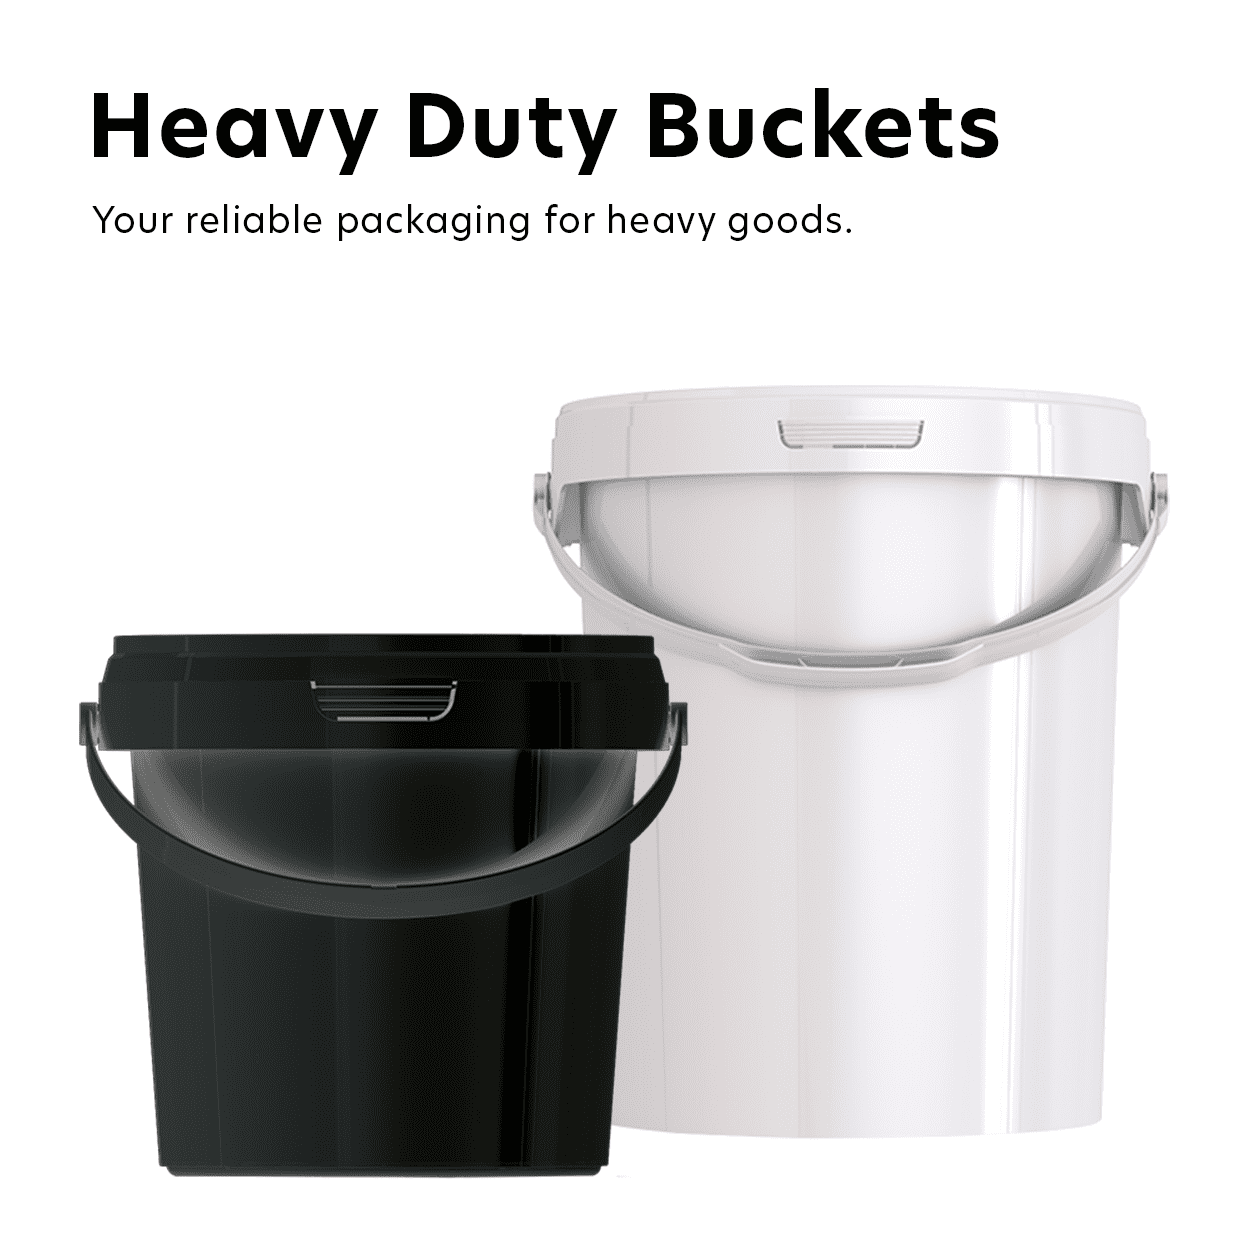 Heavy Duty Buckets